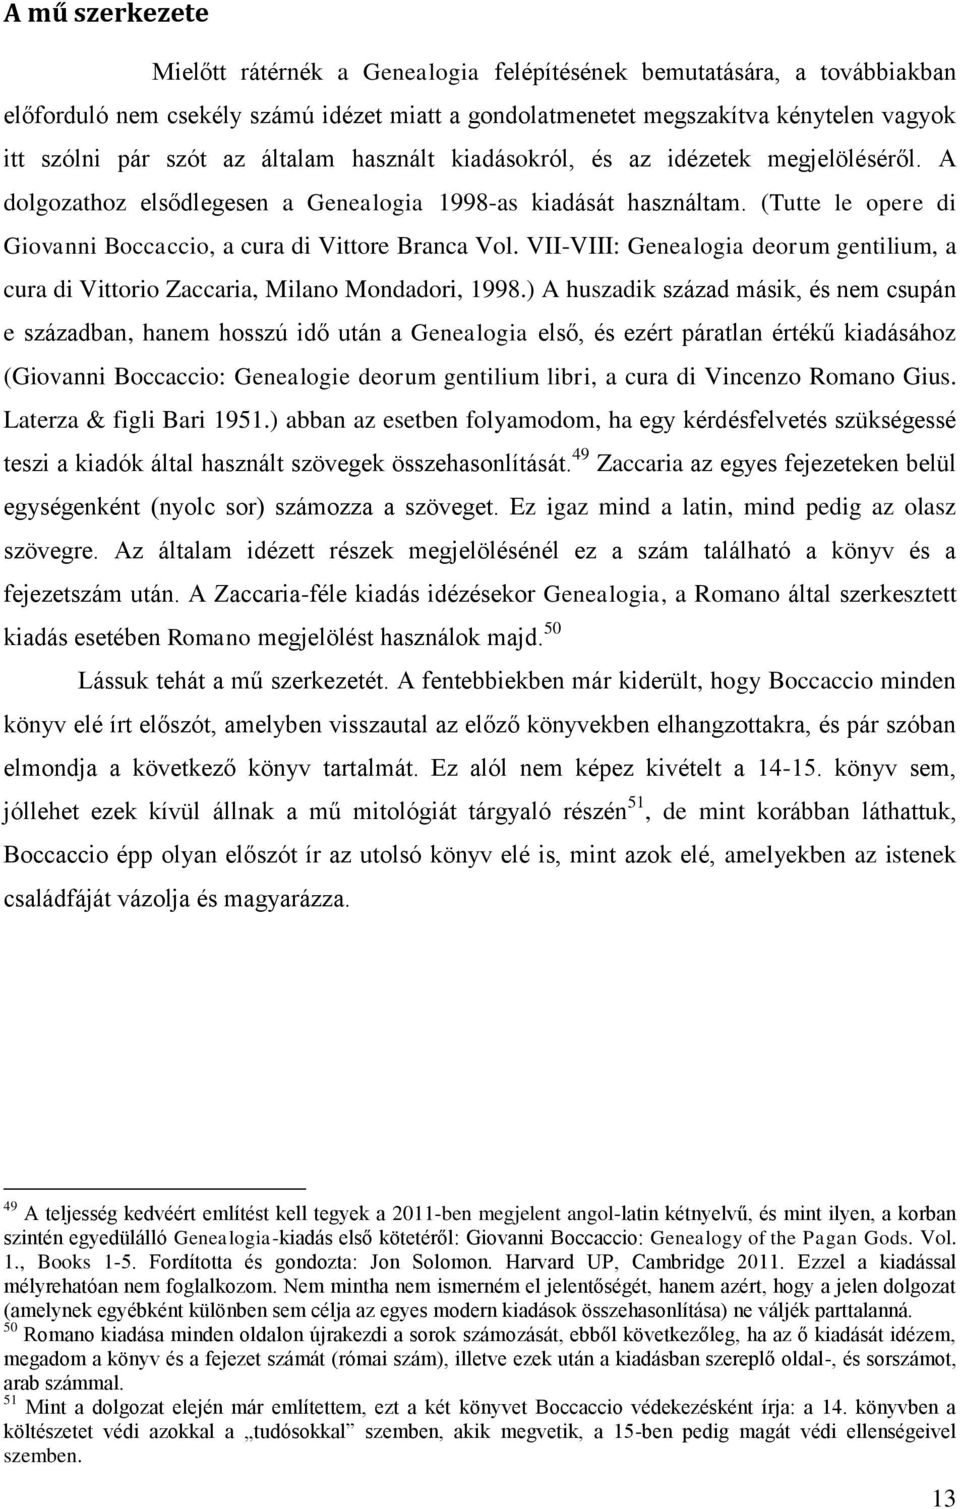 (Tutte le opere di Giovanni Boccaccio, a cura di Vittore Branca Vol. VII-VIII: Genealogia deorum gentilium, a cura di Vittorio Zaccaria, Milano Mondadori, 1998.